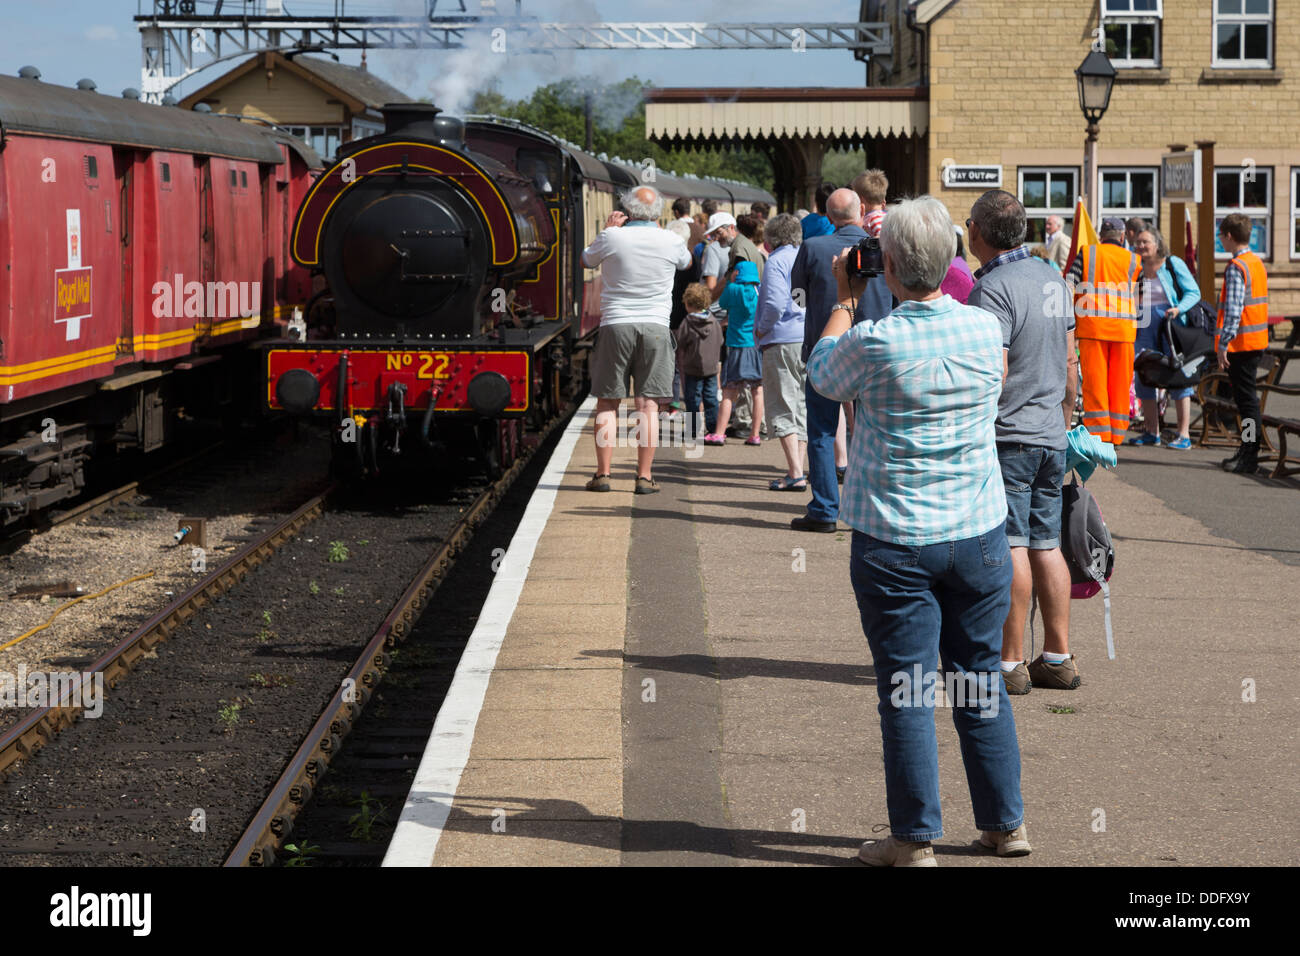 Regardez les amateurs de l'arrivée d'un train à vapeur sur la station Oundle Nene Valley Railway. Banque D'Images